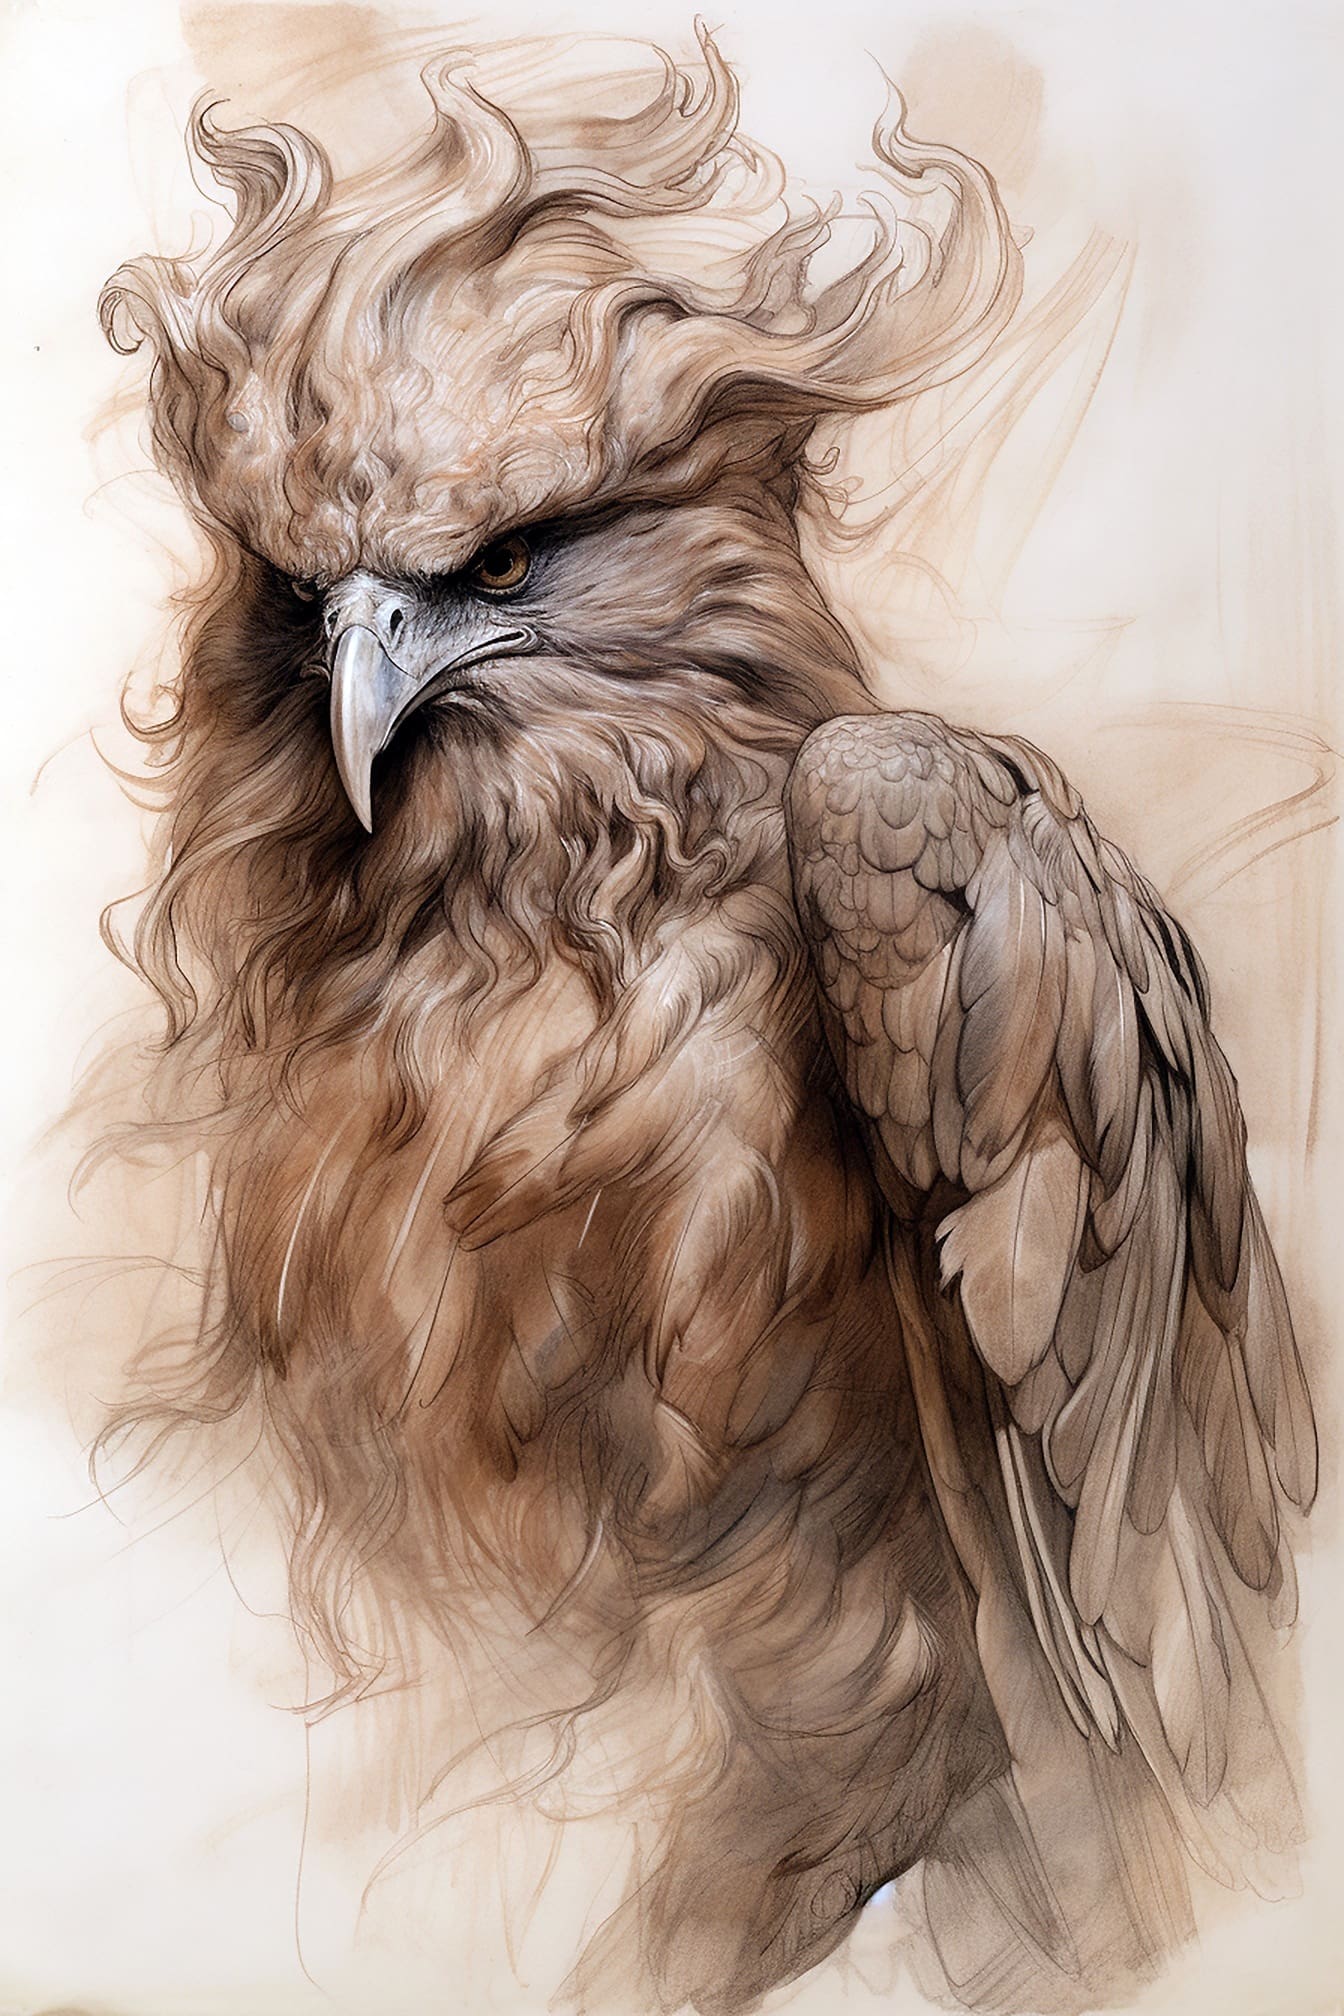 Gambar artistik burung predator dengan warna coklat muda